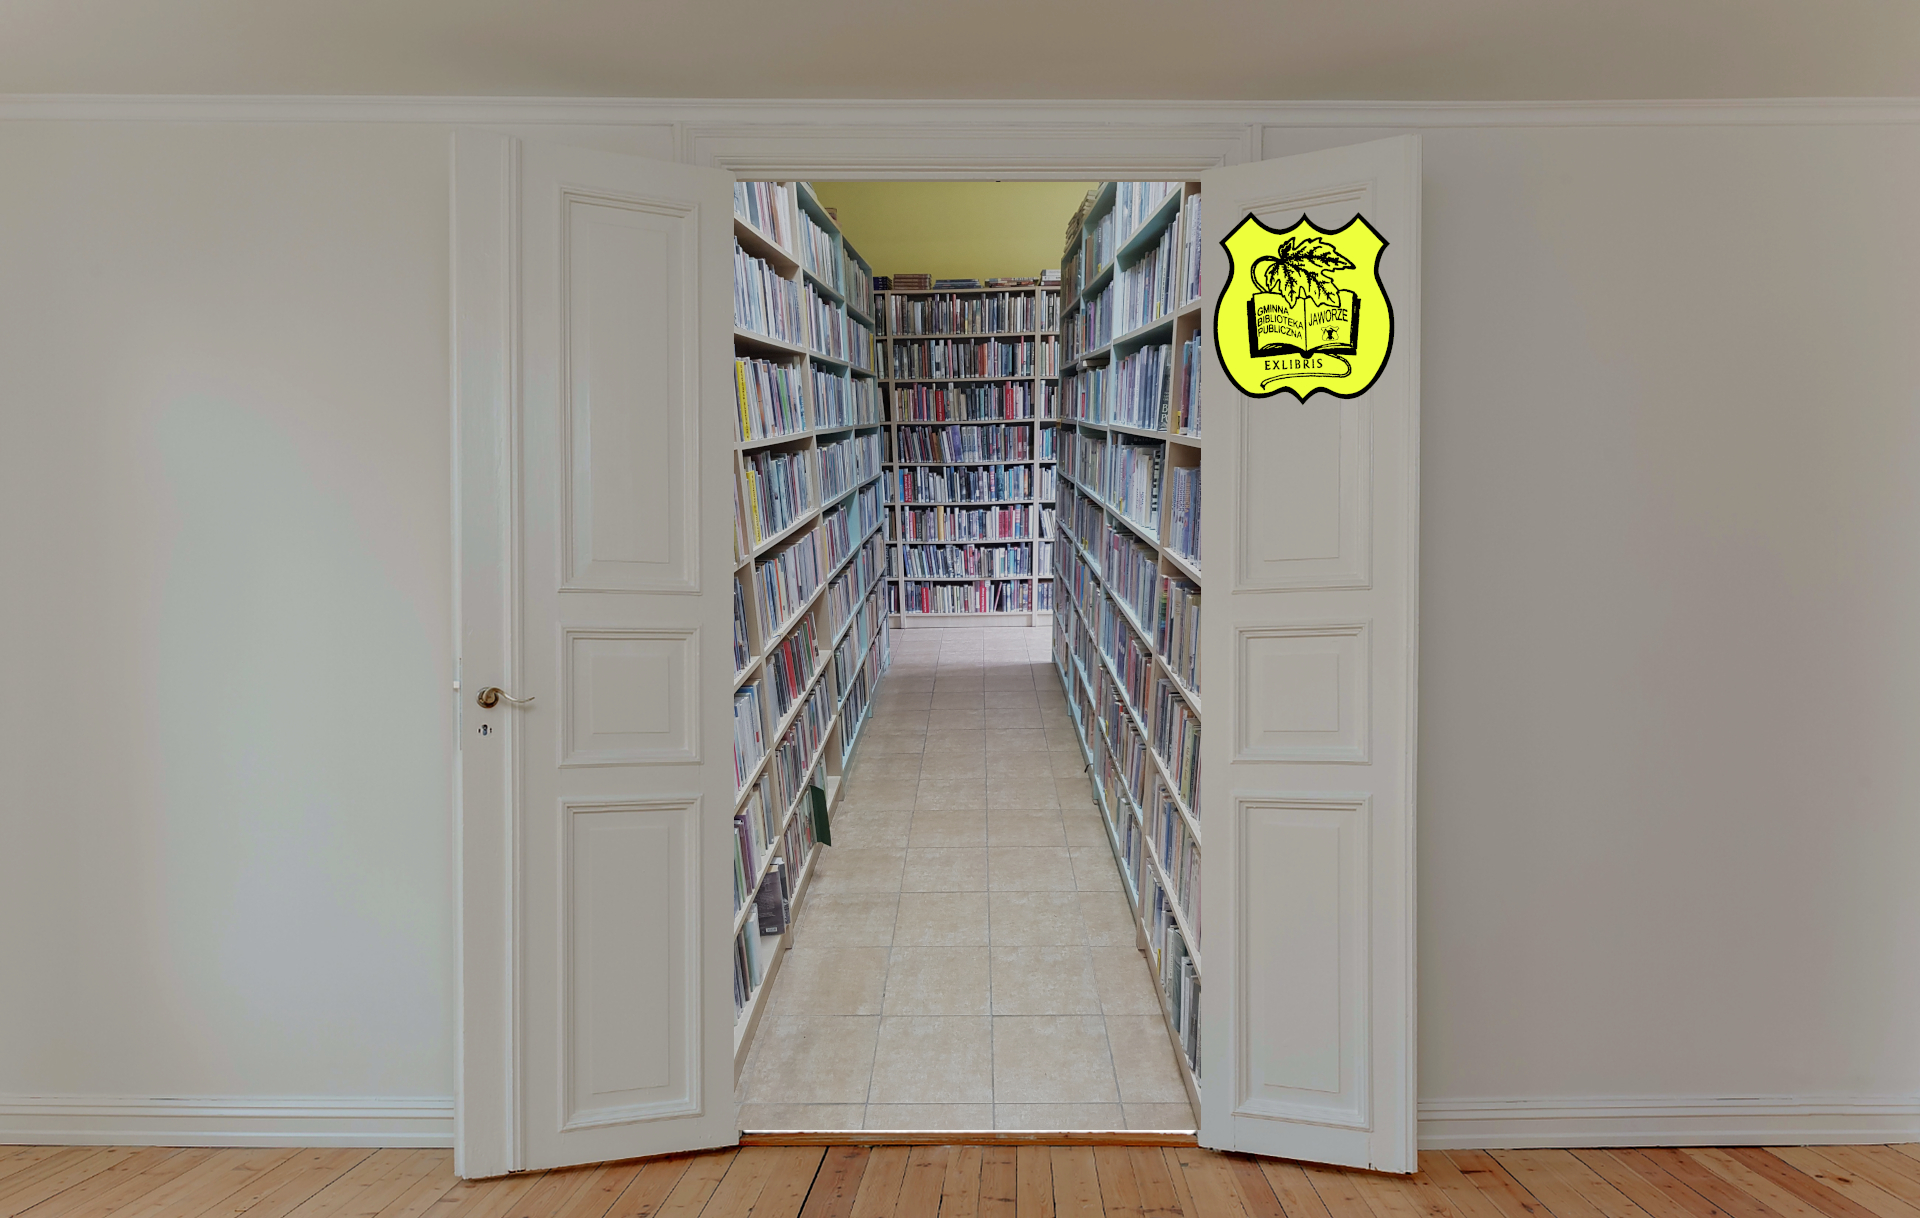 Otwarte na oścież drzwi, za nimi korytarz z regałami z książkami po bokach